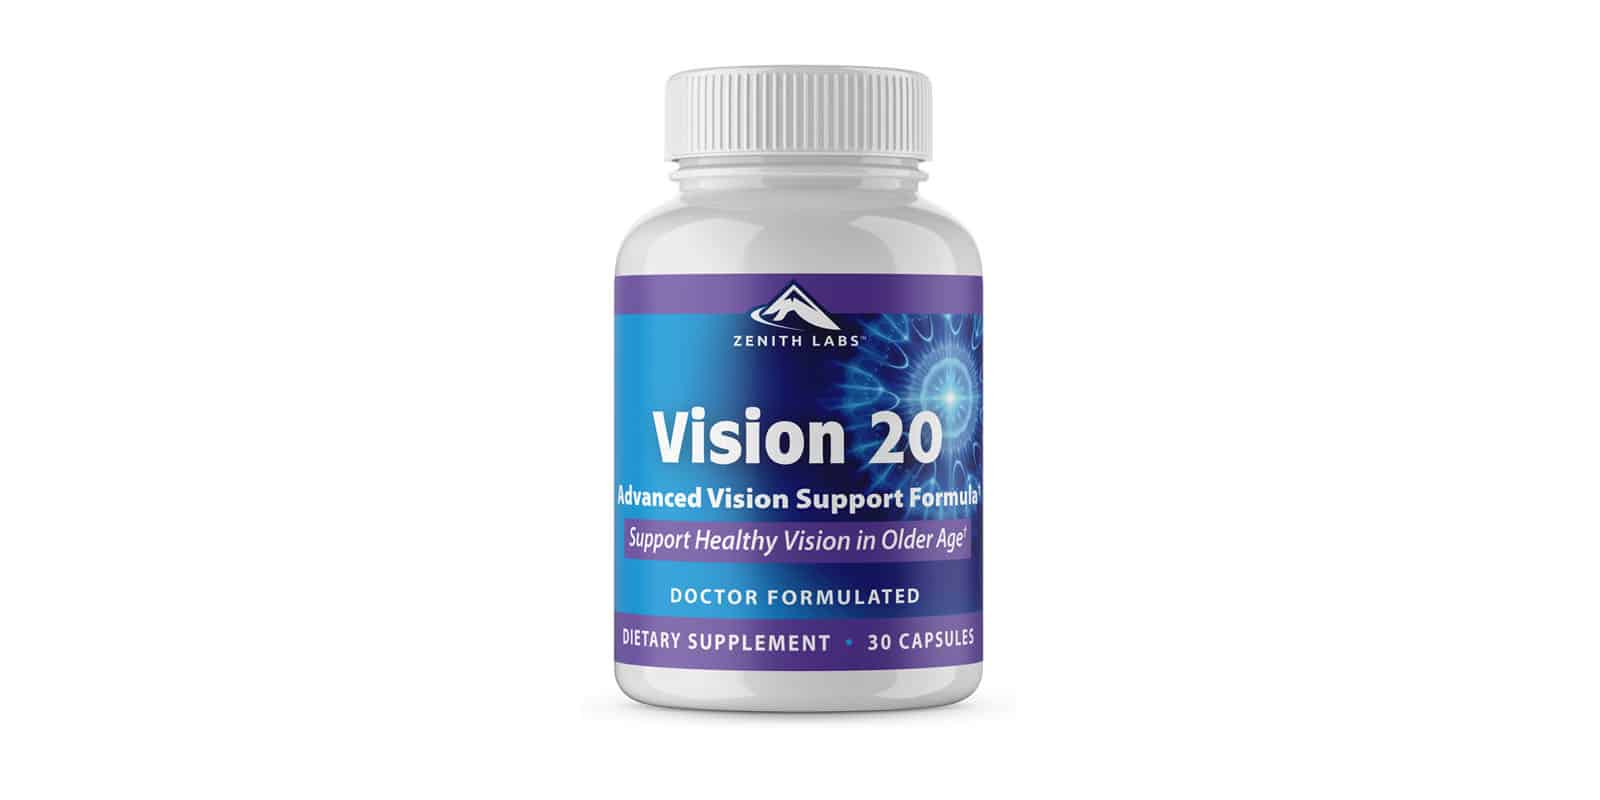 Vision 20 Reviews